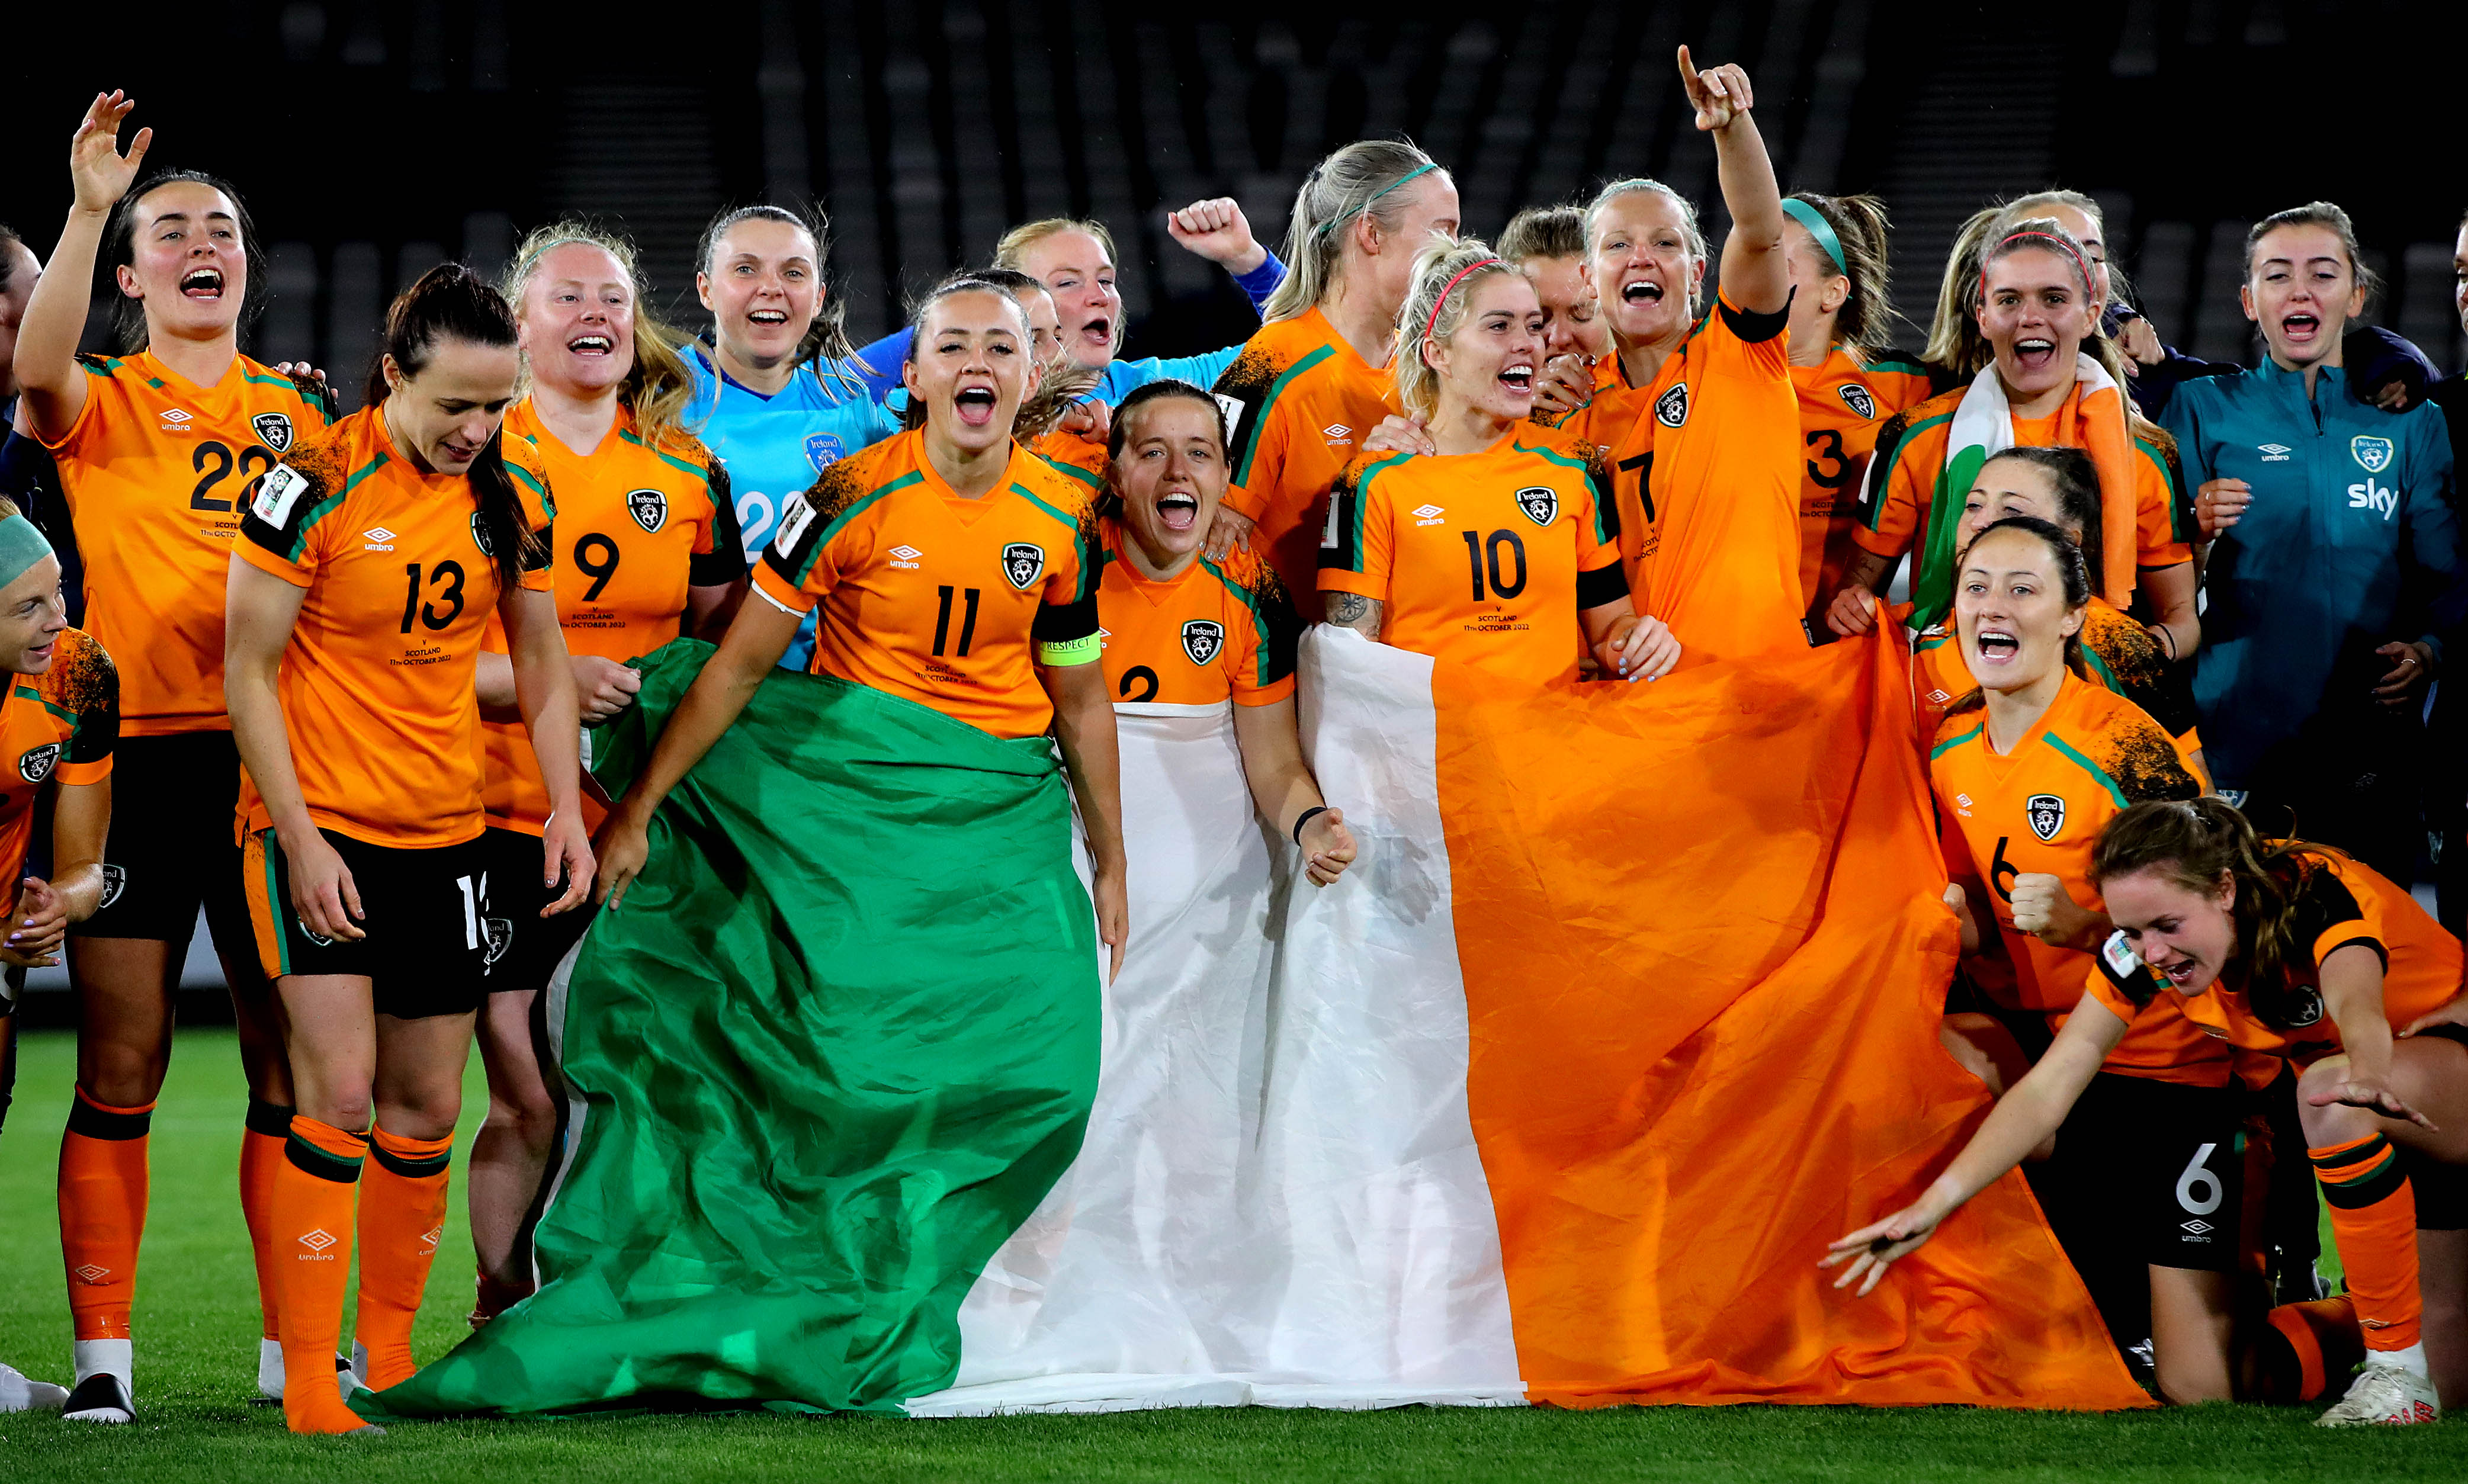 women's irish soccer jersey